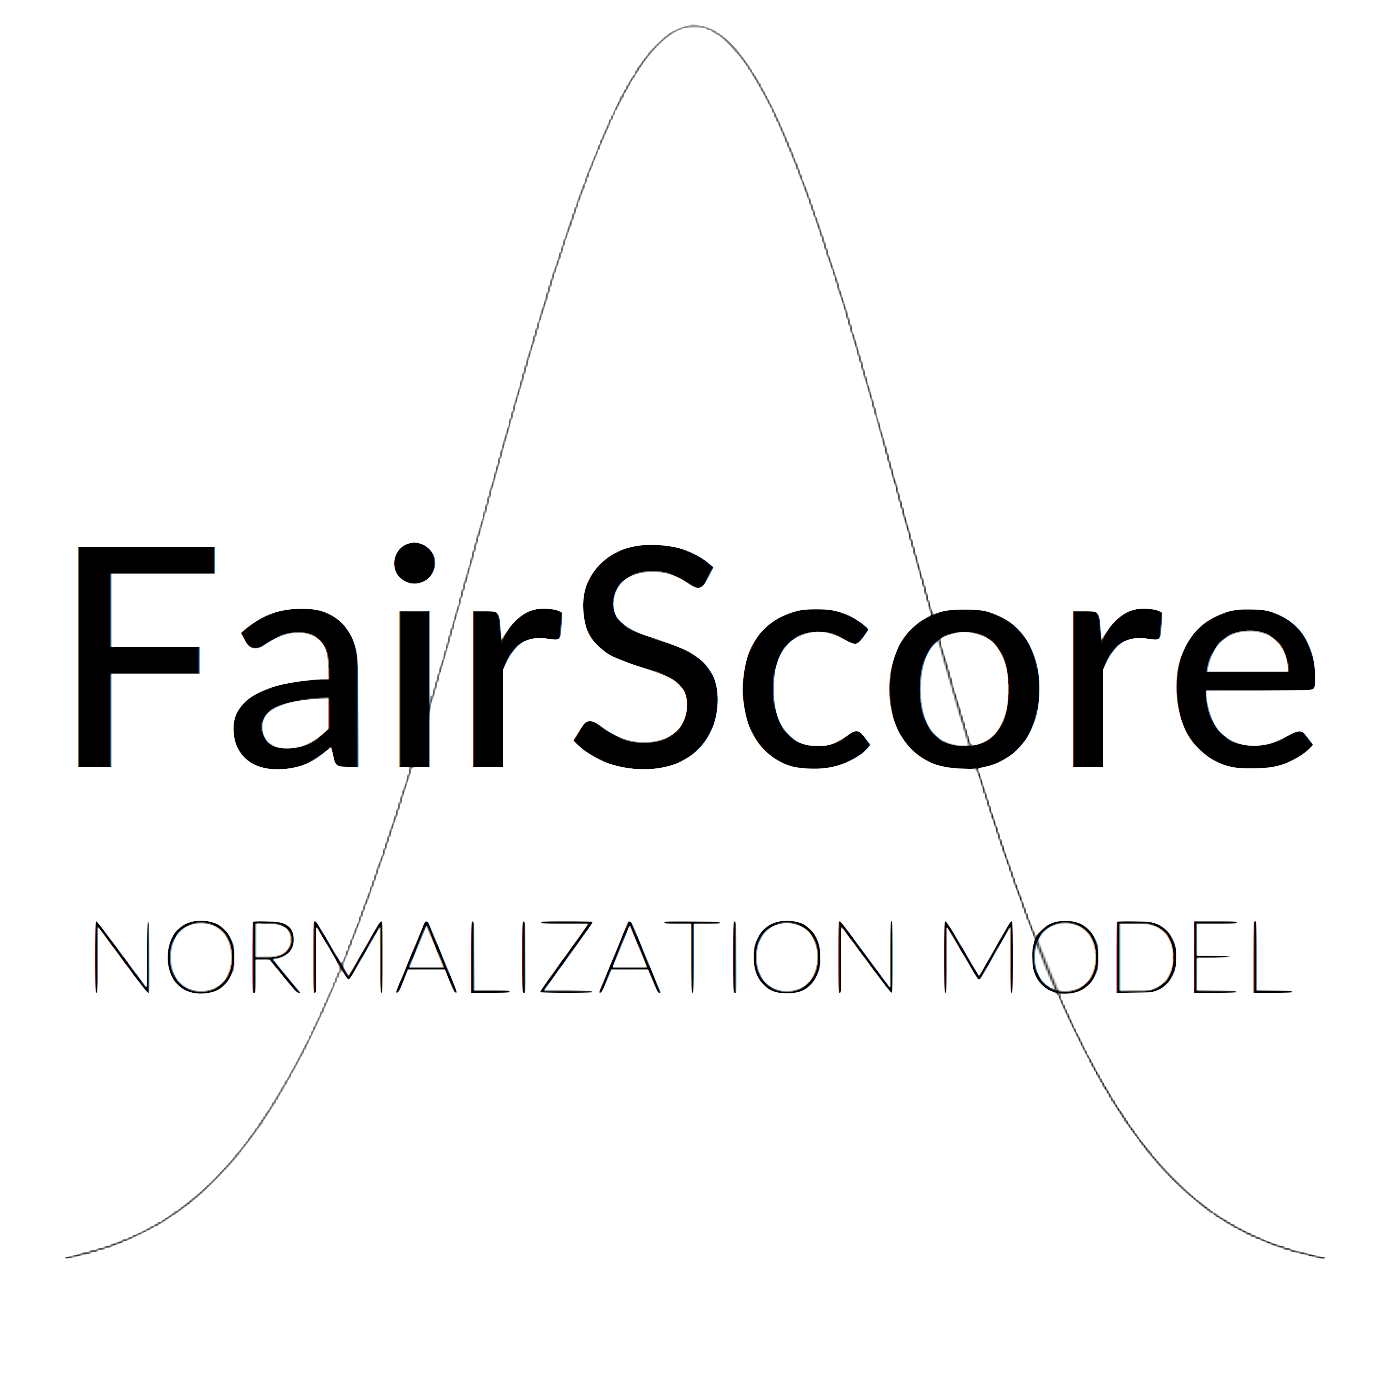 FairScore